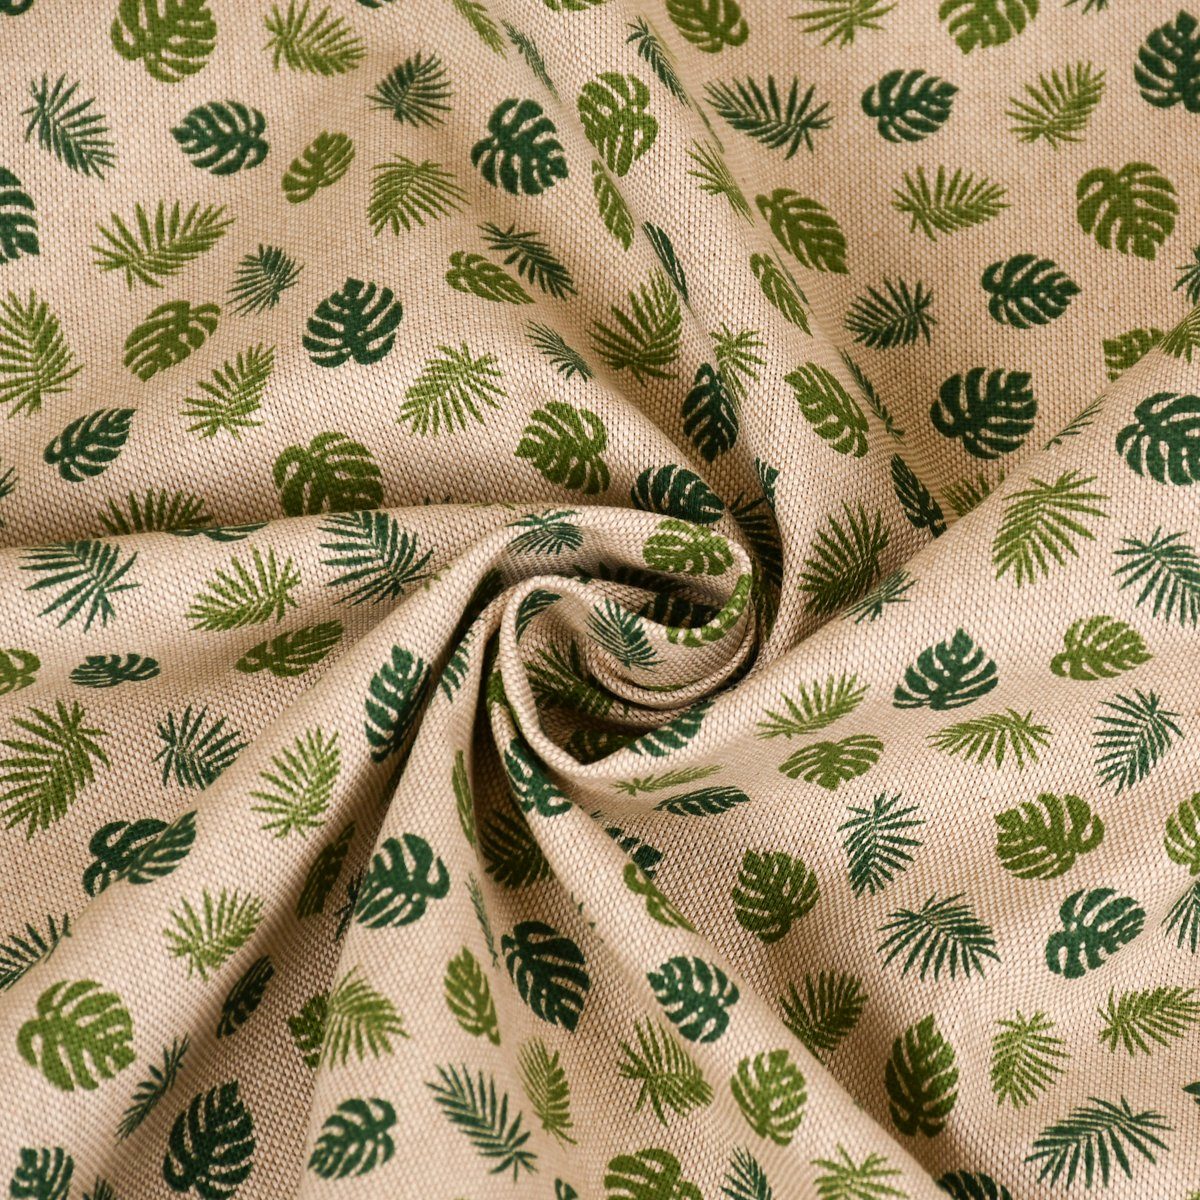 SCHÖNER LEBEN. Tischläufer SCHÖNER handmade natur Tischläufer Monstera grün, LEBEN. Blätter Jungle Leaf